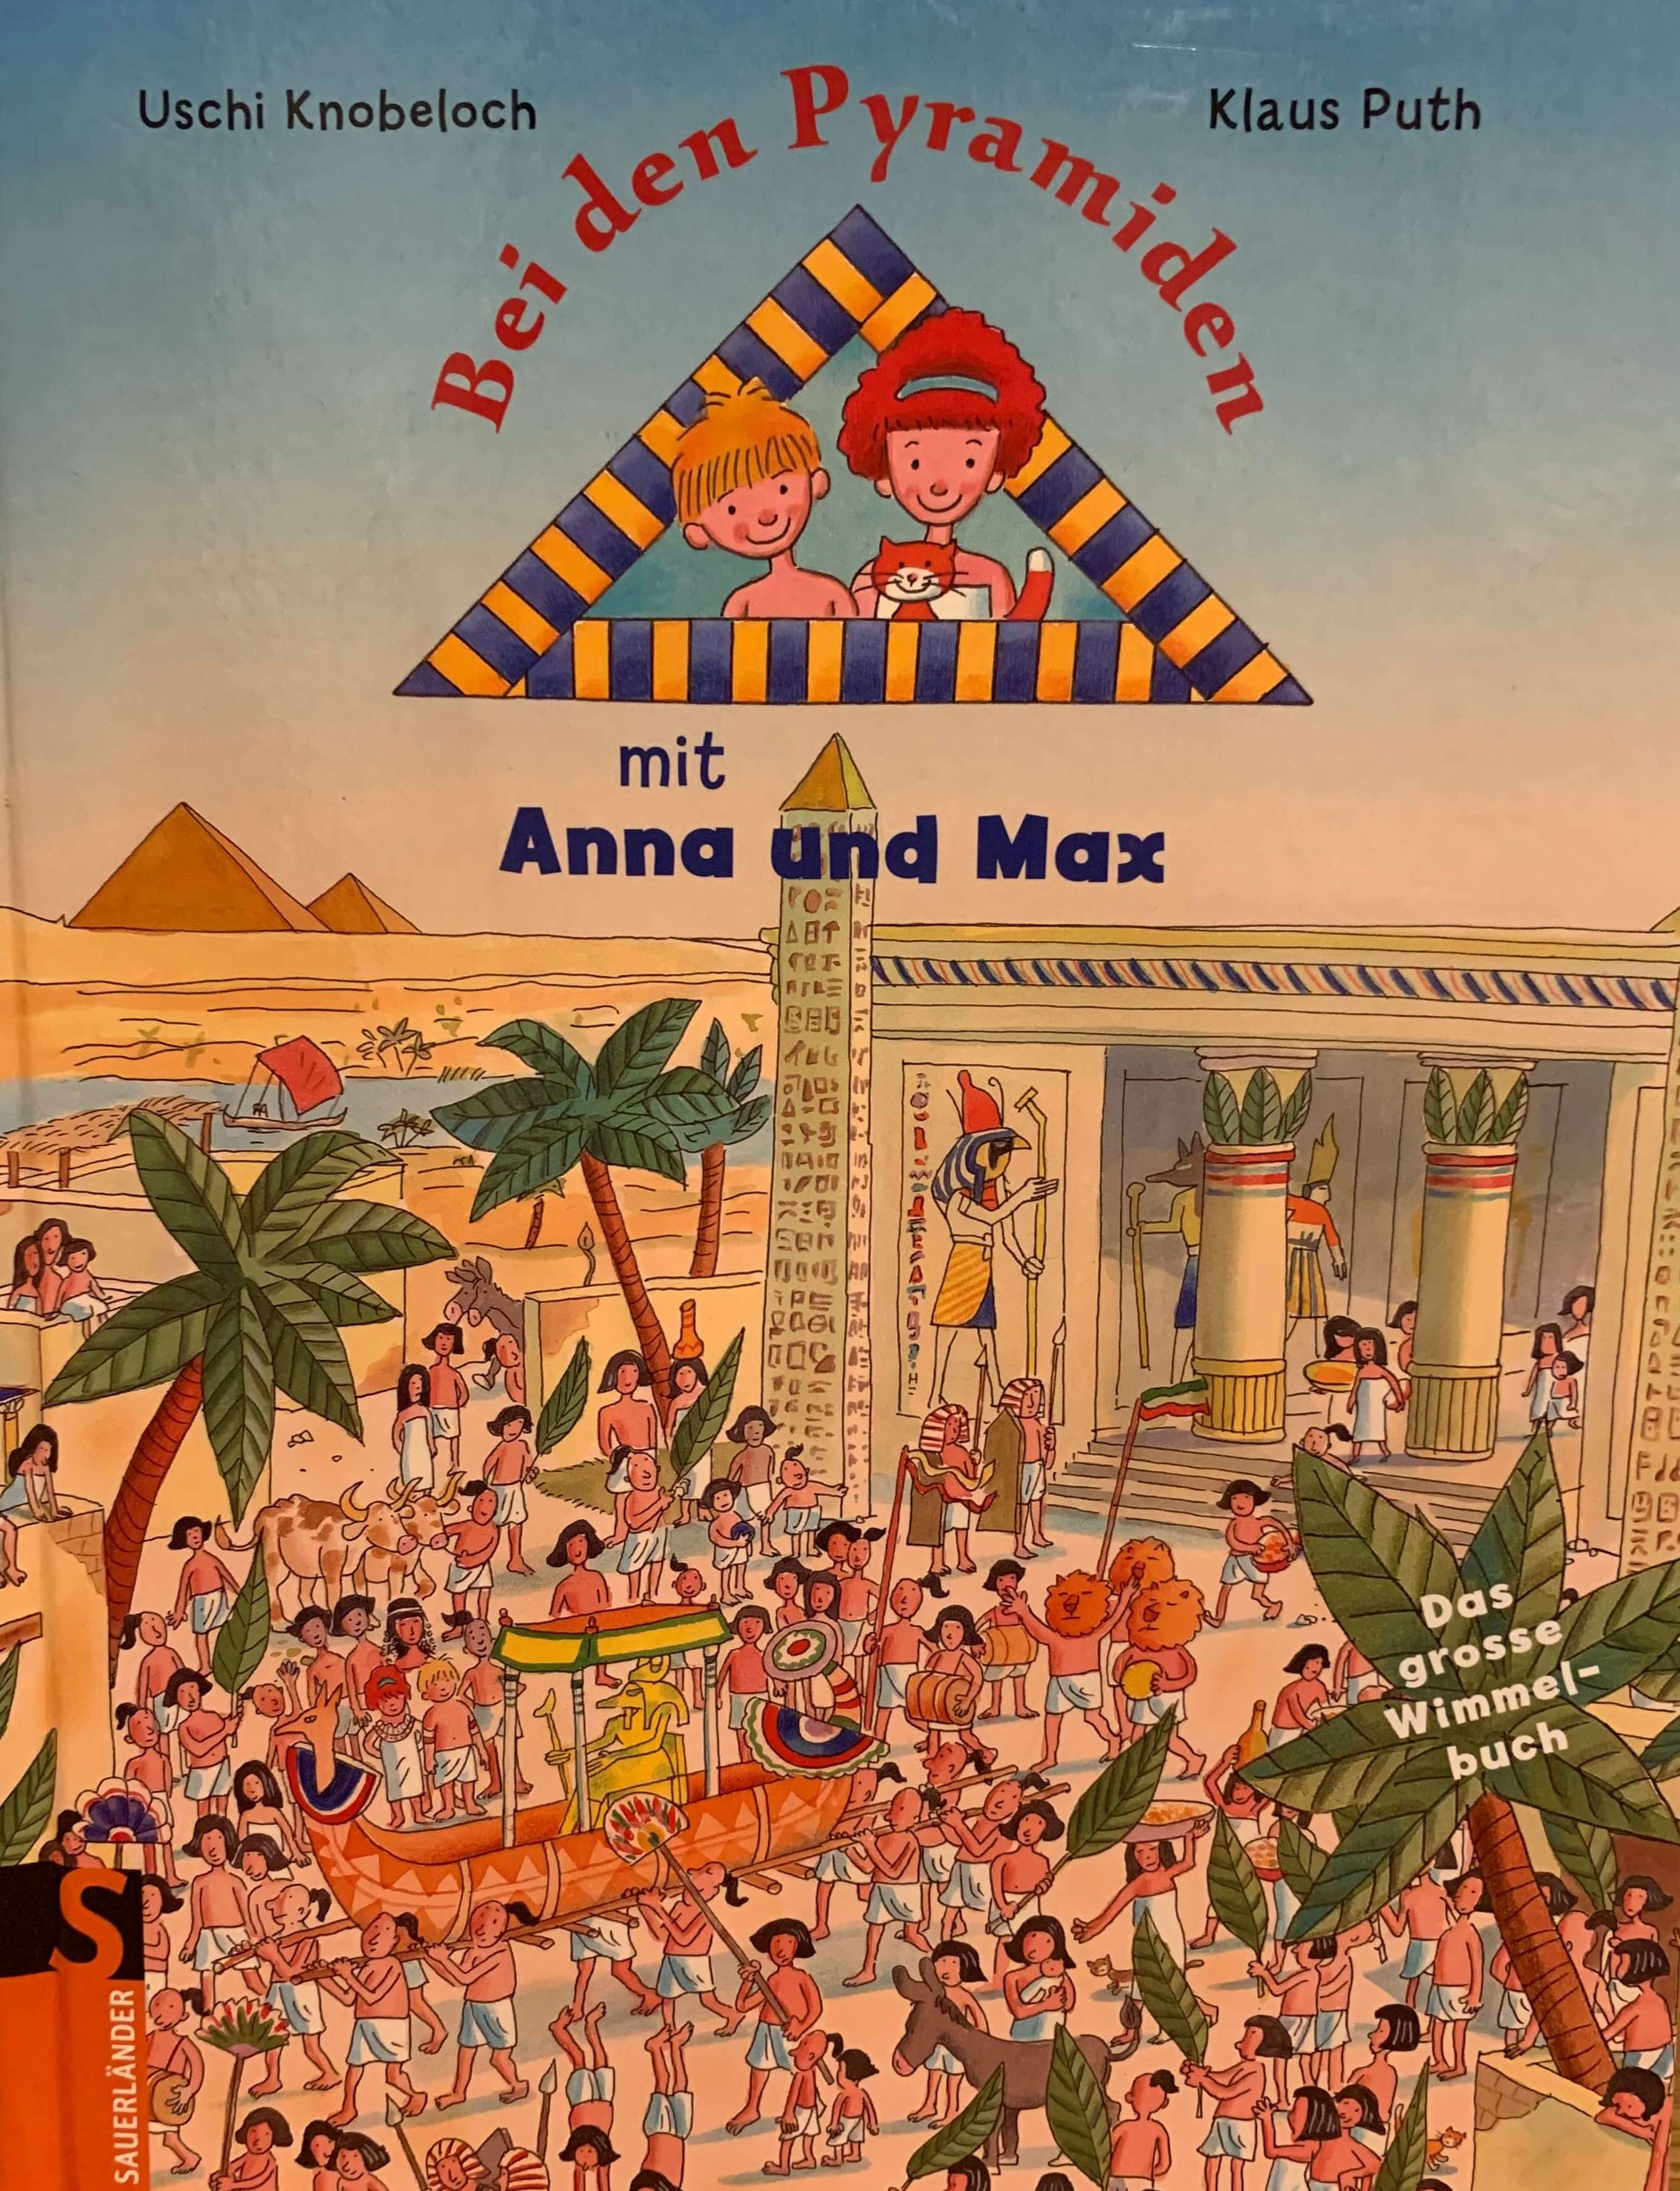 Bei den Pyramiden mit Anna und Max